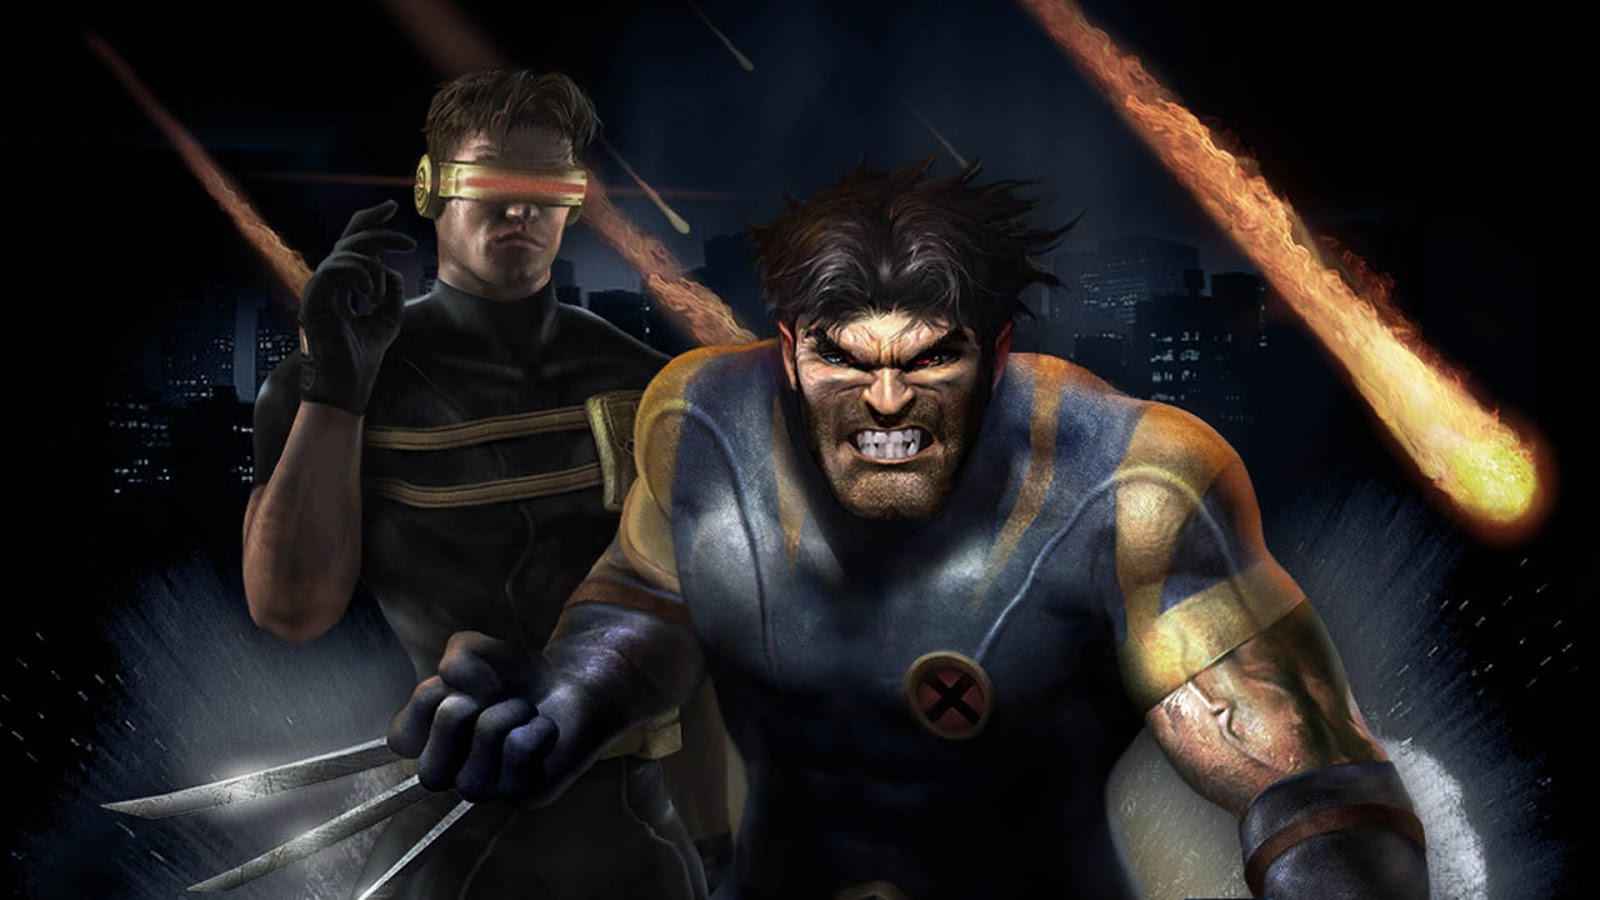 A batalha começa em 3, 2, 1 Heroes of the Storm chegou! - GameBlast